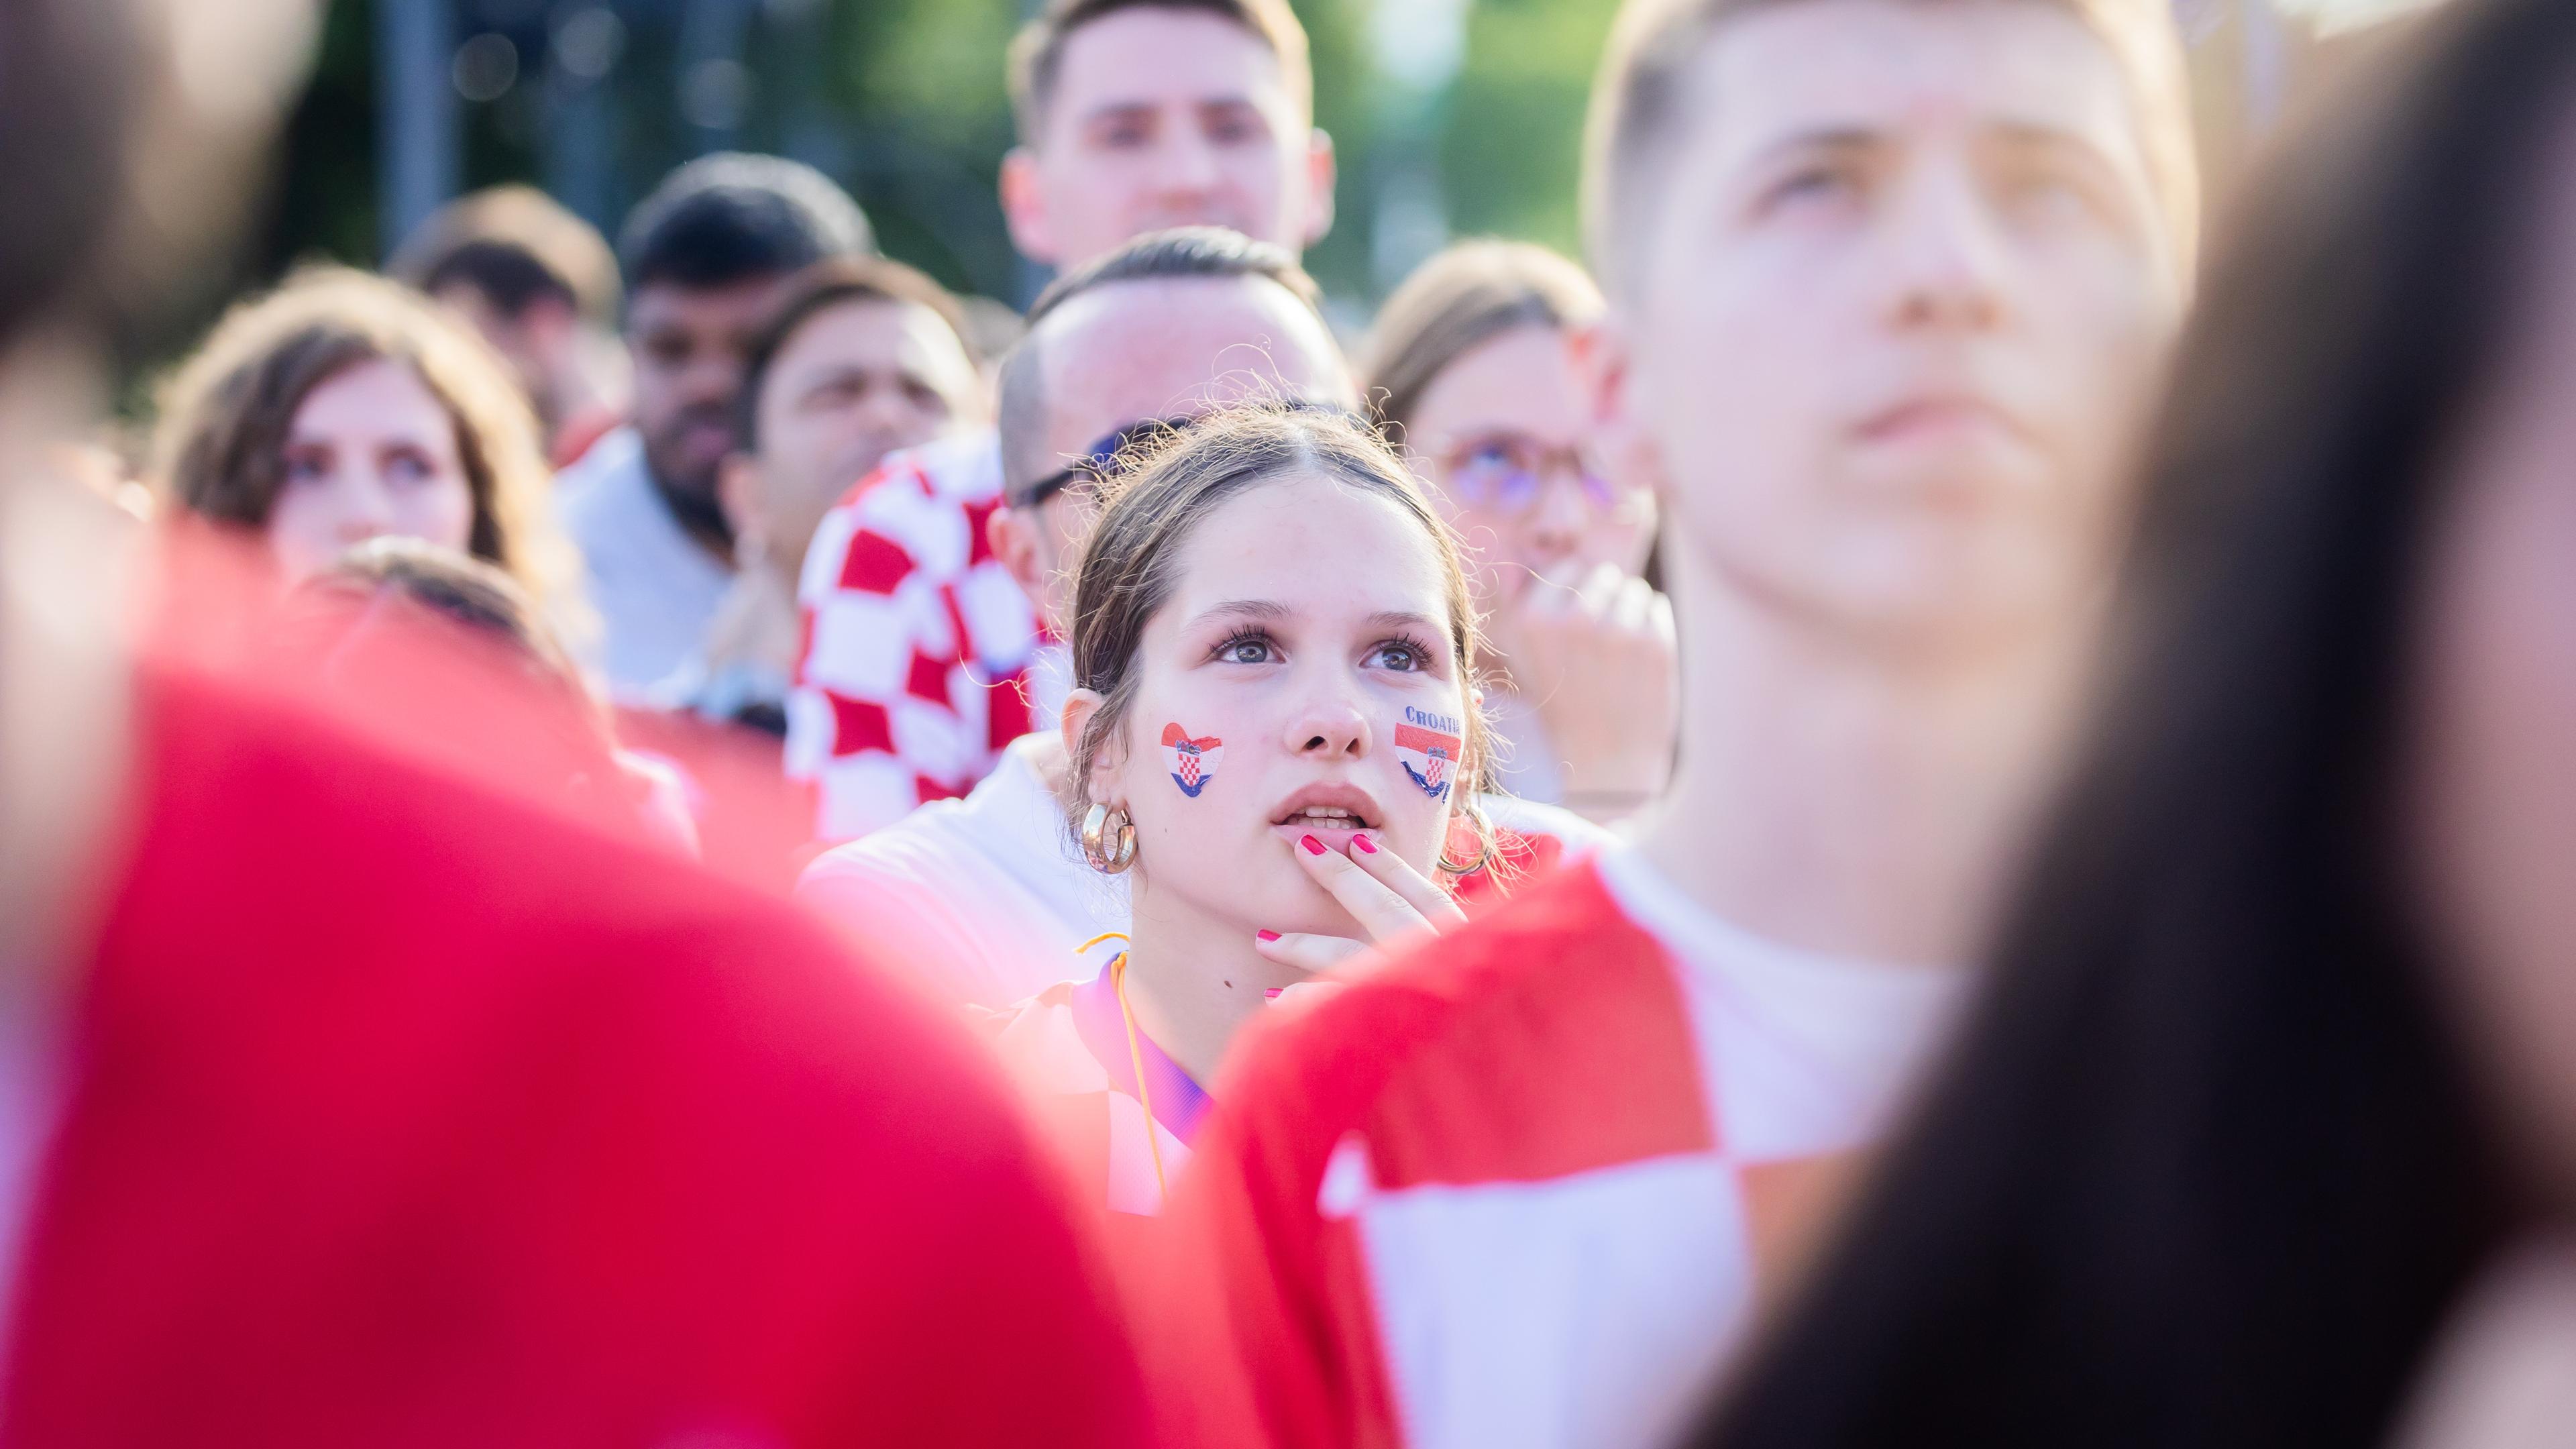 Ein kroatischer Fan bangt beim Public Viewing in der Fanzone am Brandenburger Tor